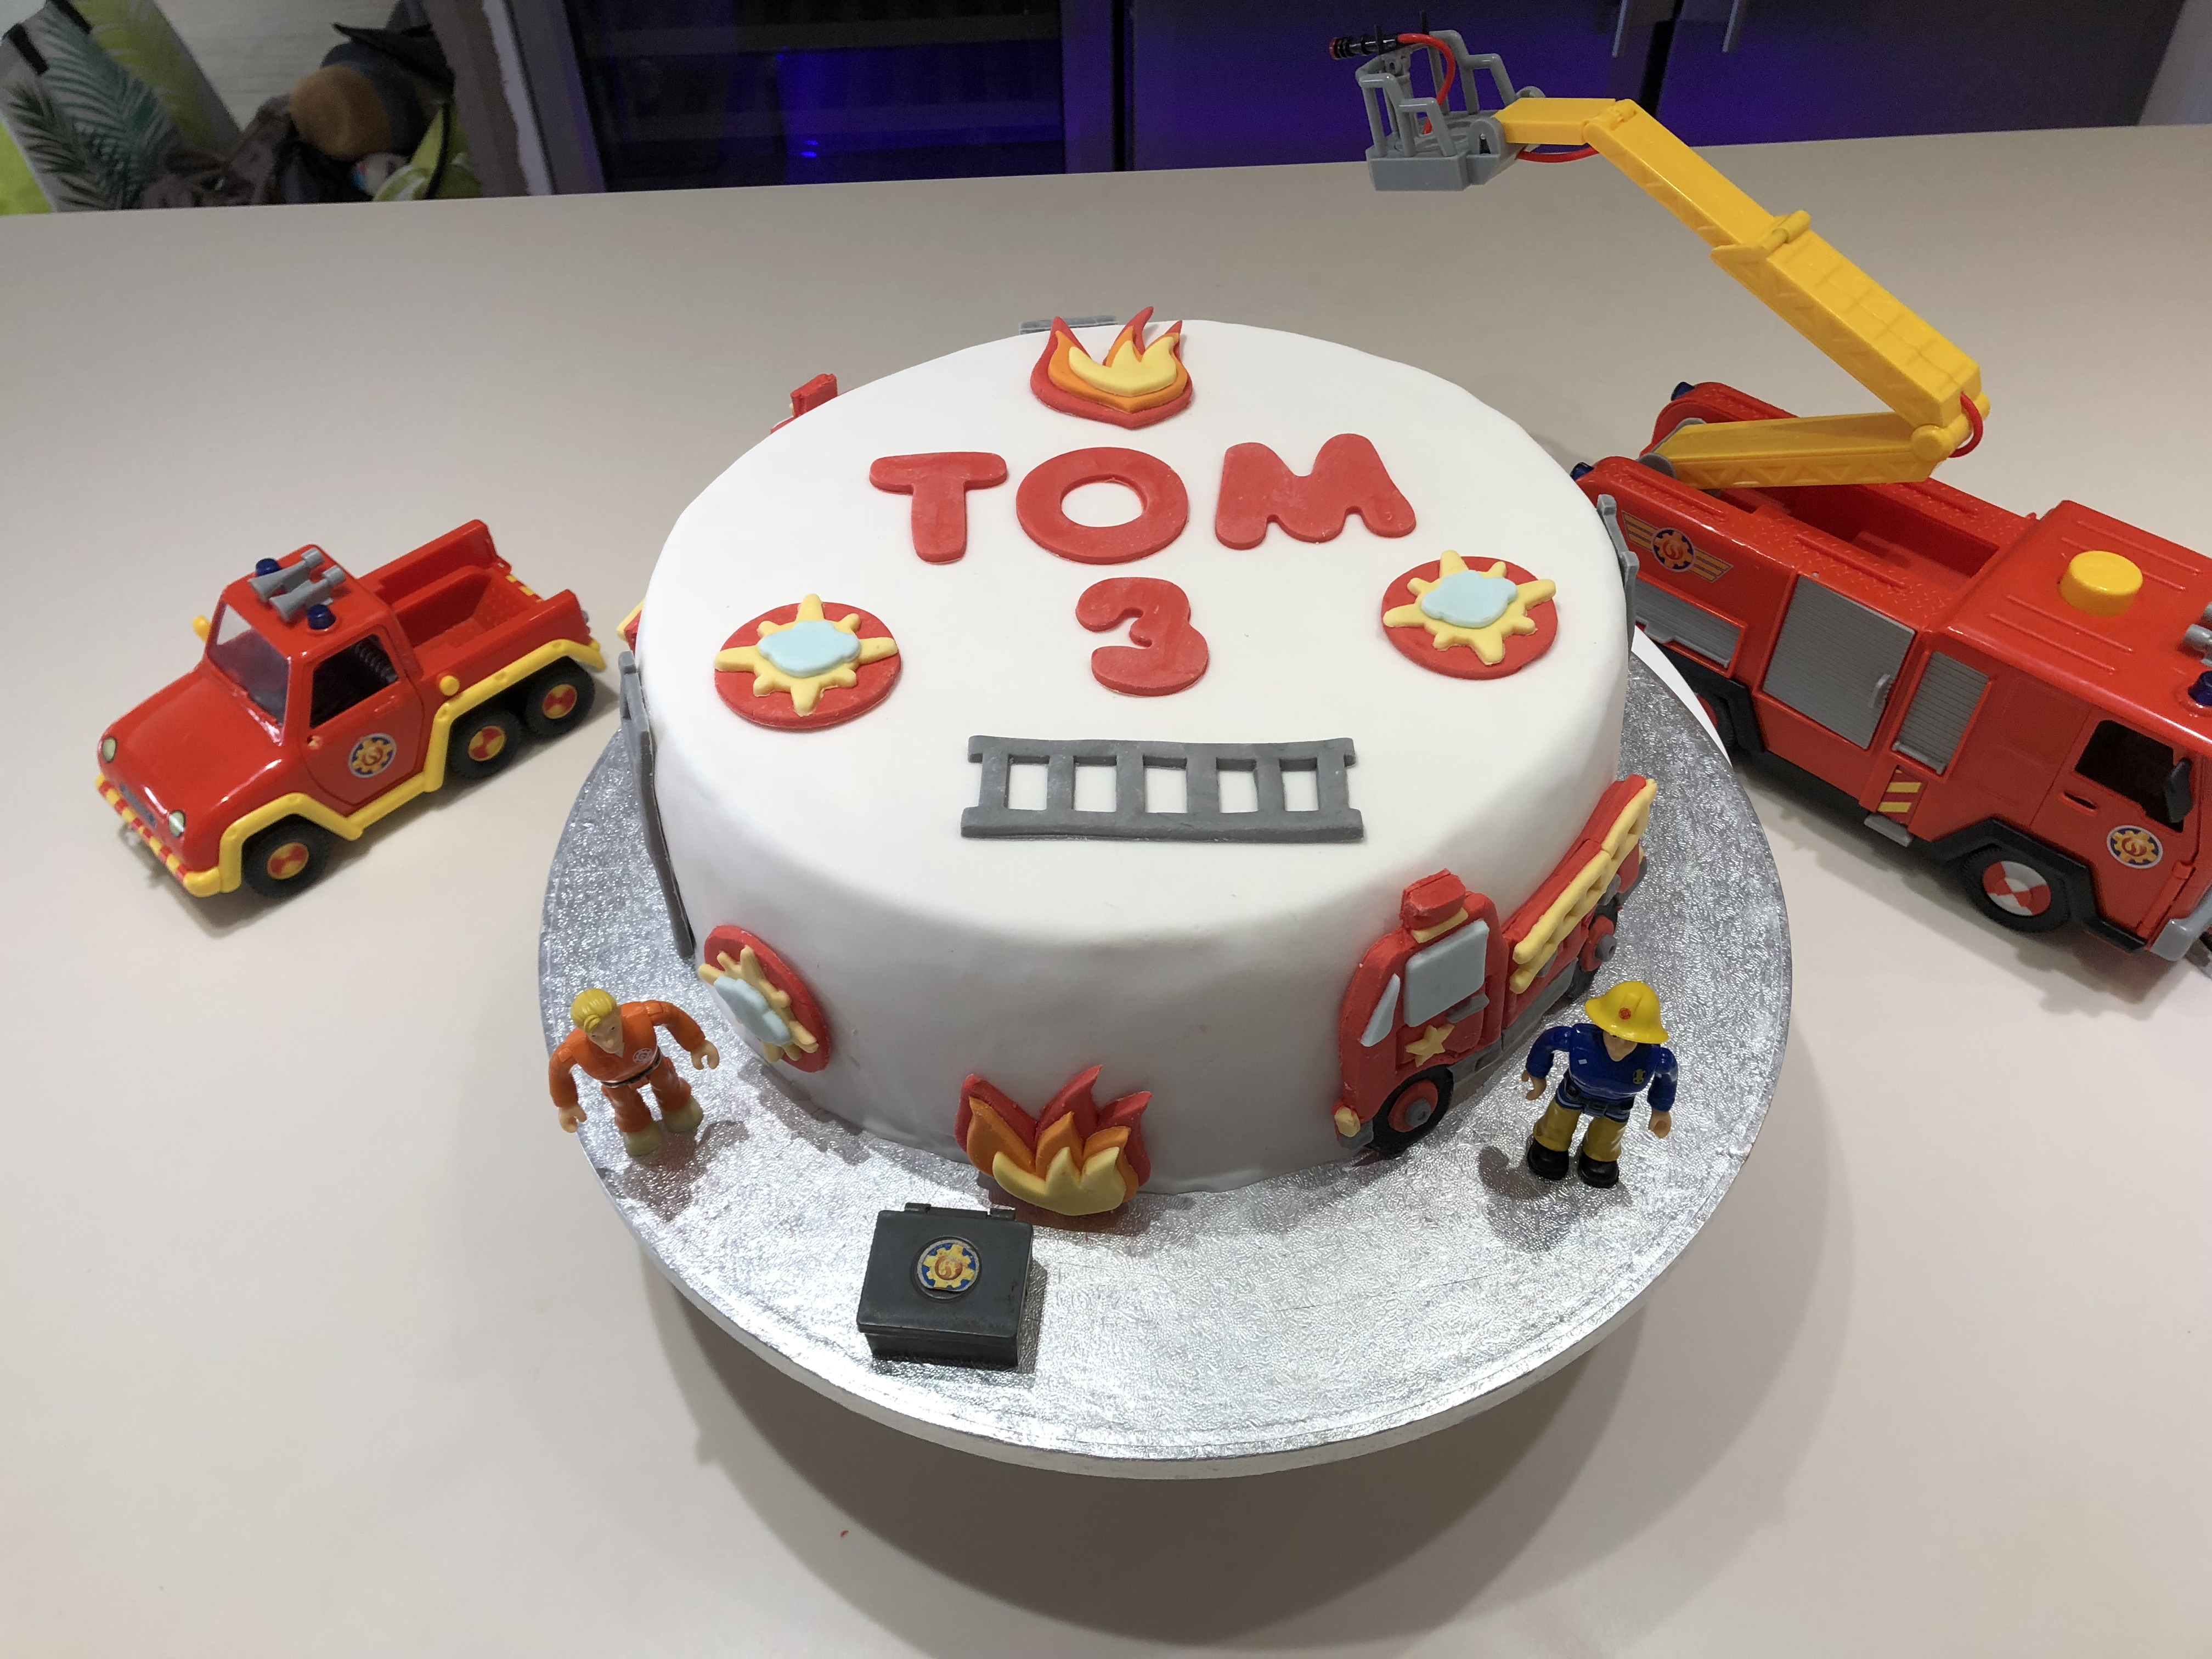 Le Layer cake et sa décoration d'anniversaire Sam le pompier